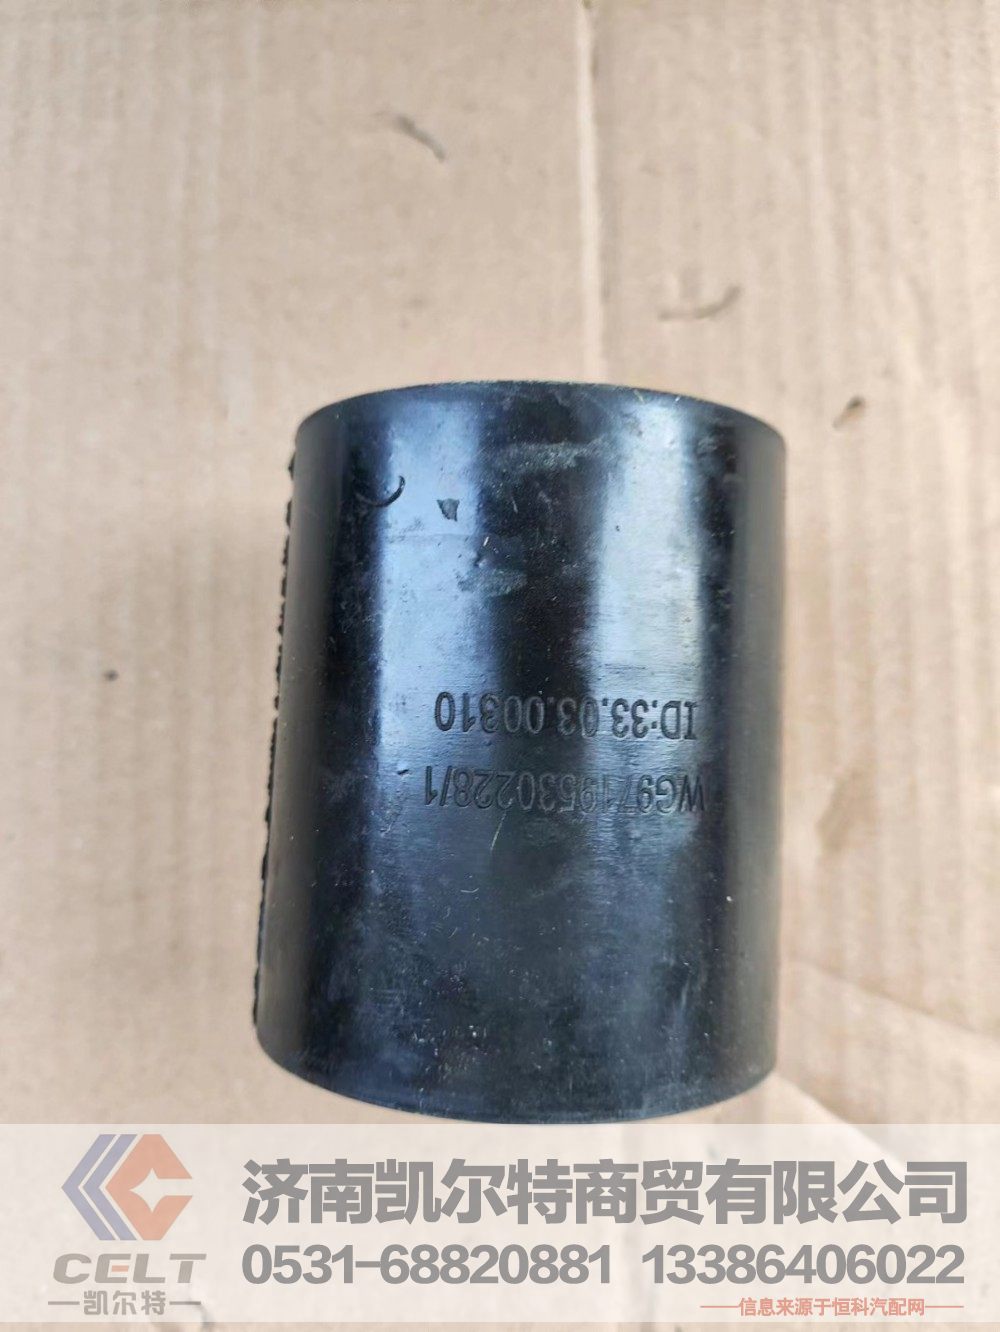 WG9719530228,橡胶软管,济南凯尔特商贸有限公司